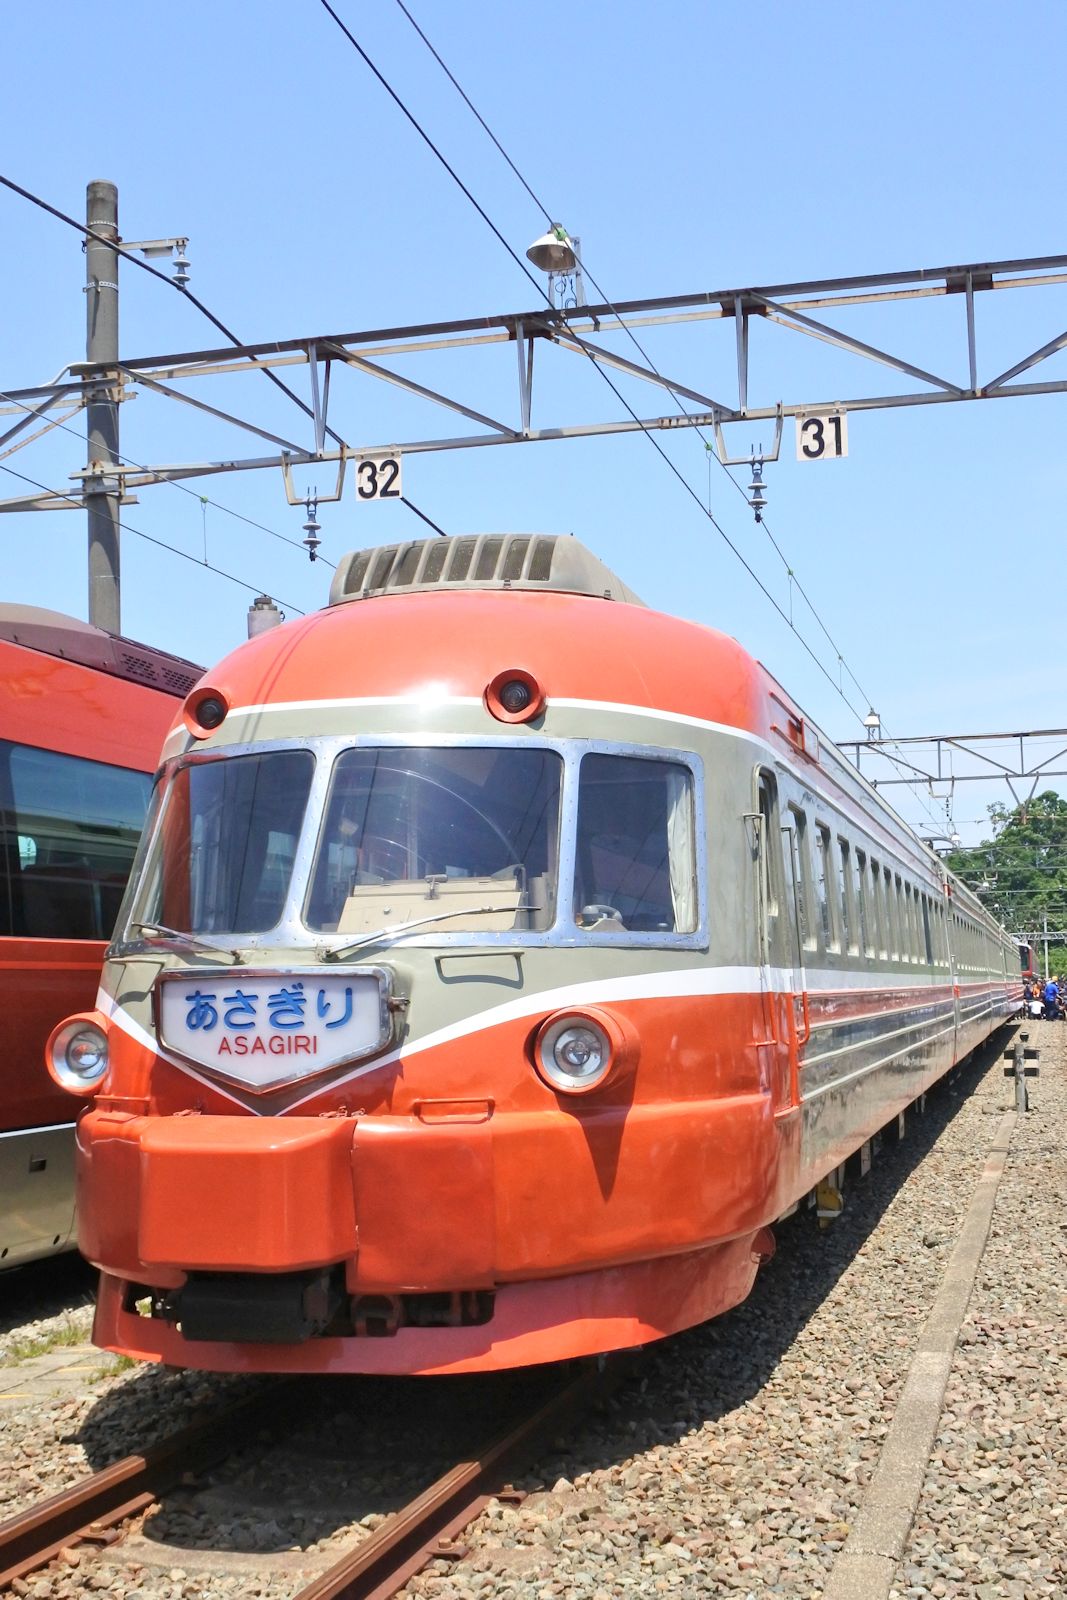 小田急ロマンスカー 初代3000形「SE」を見る | 花見友紀の「鉄道のある日常」 - 楽天ブログ